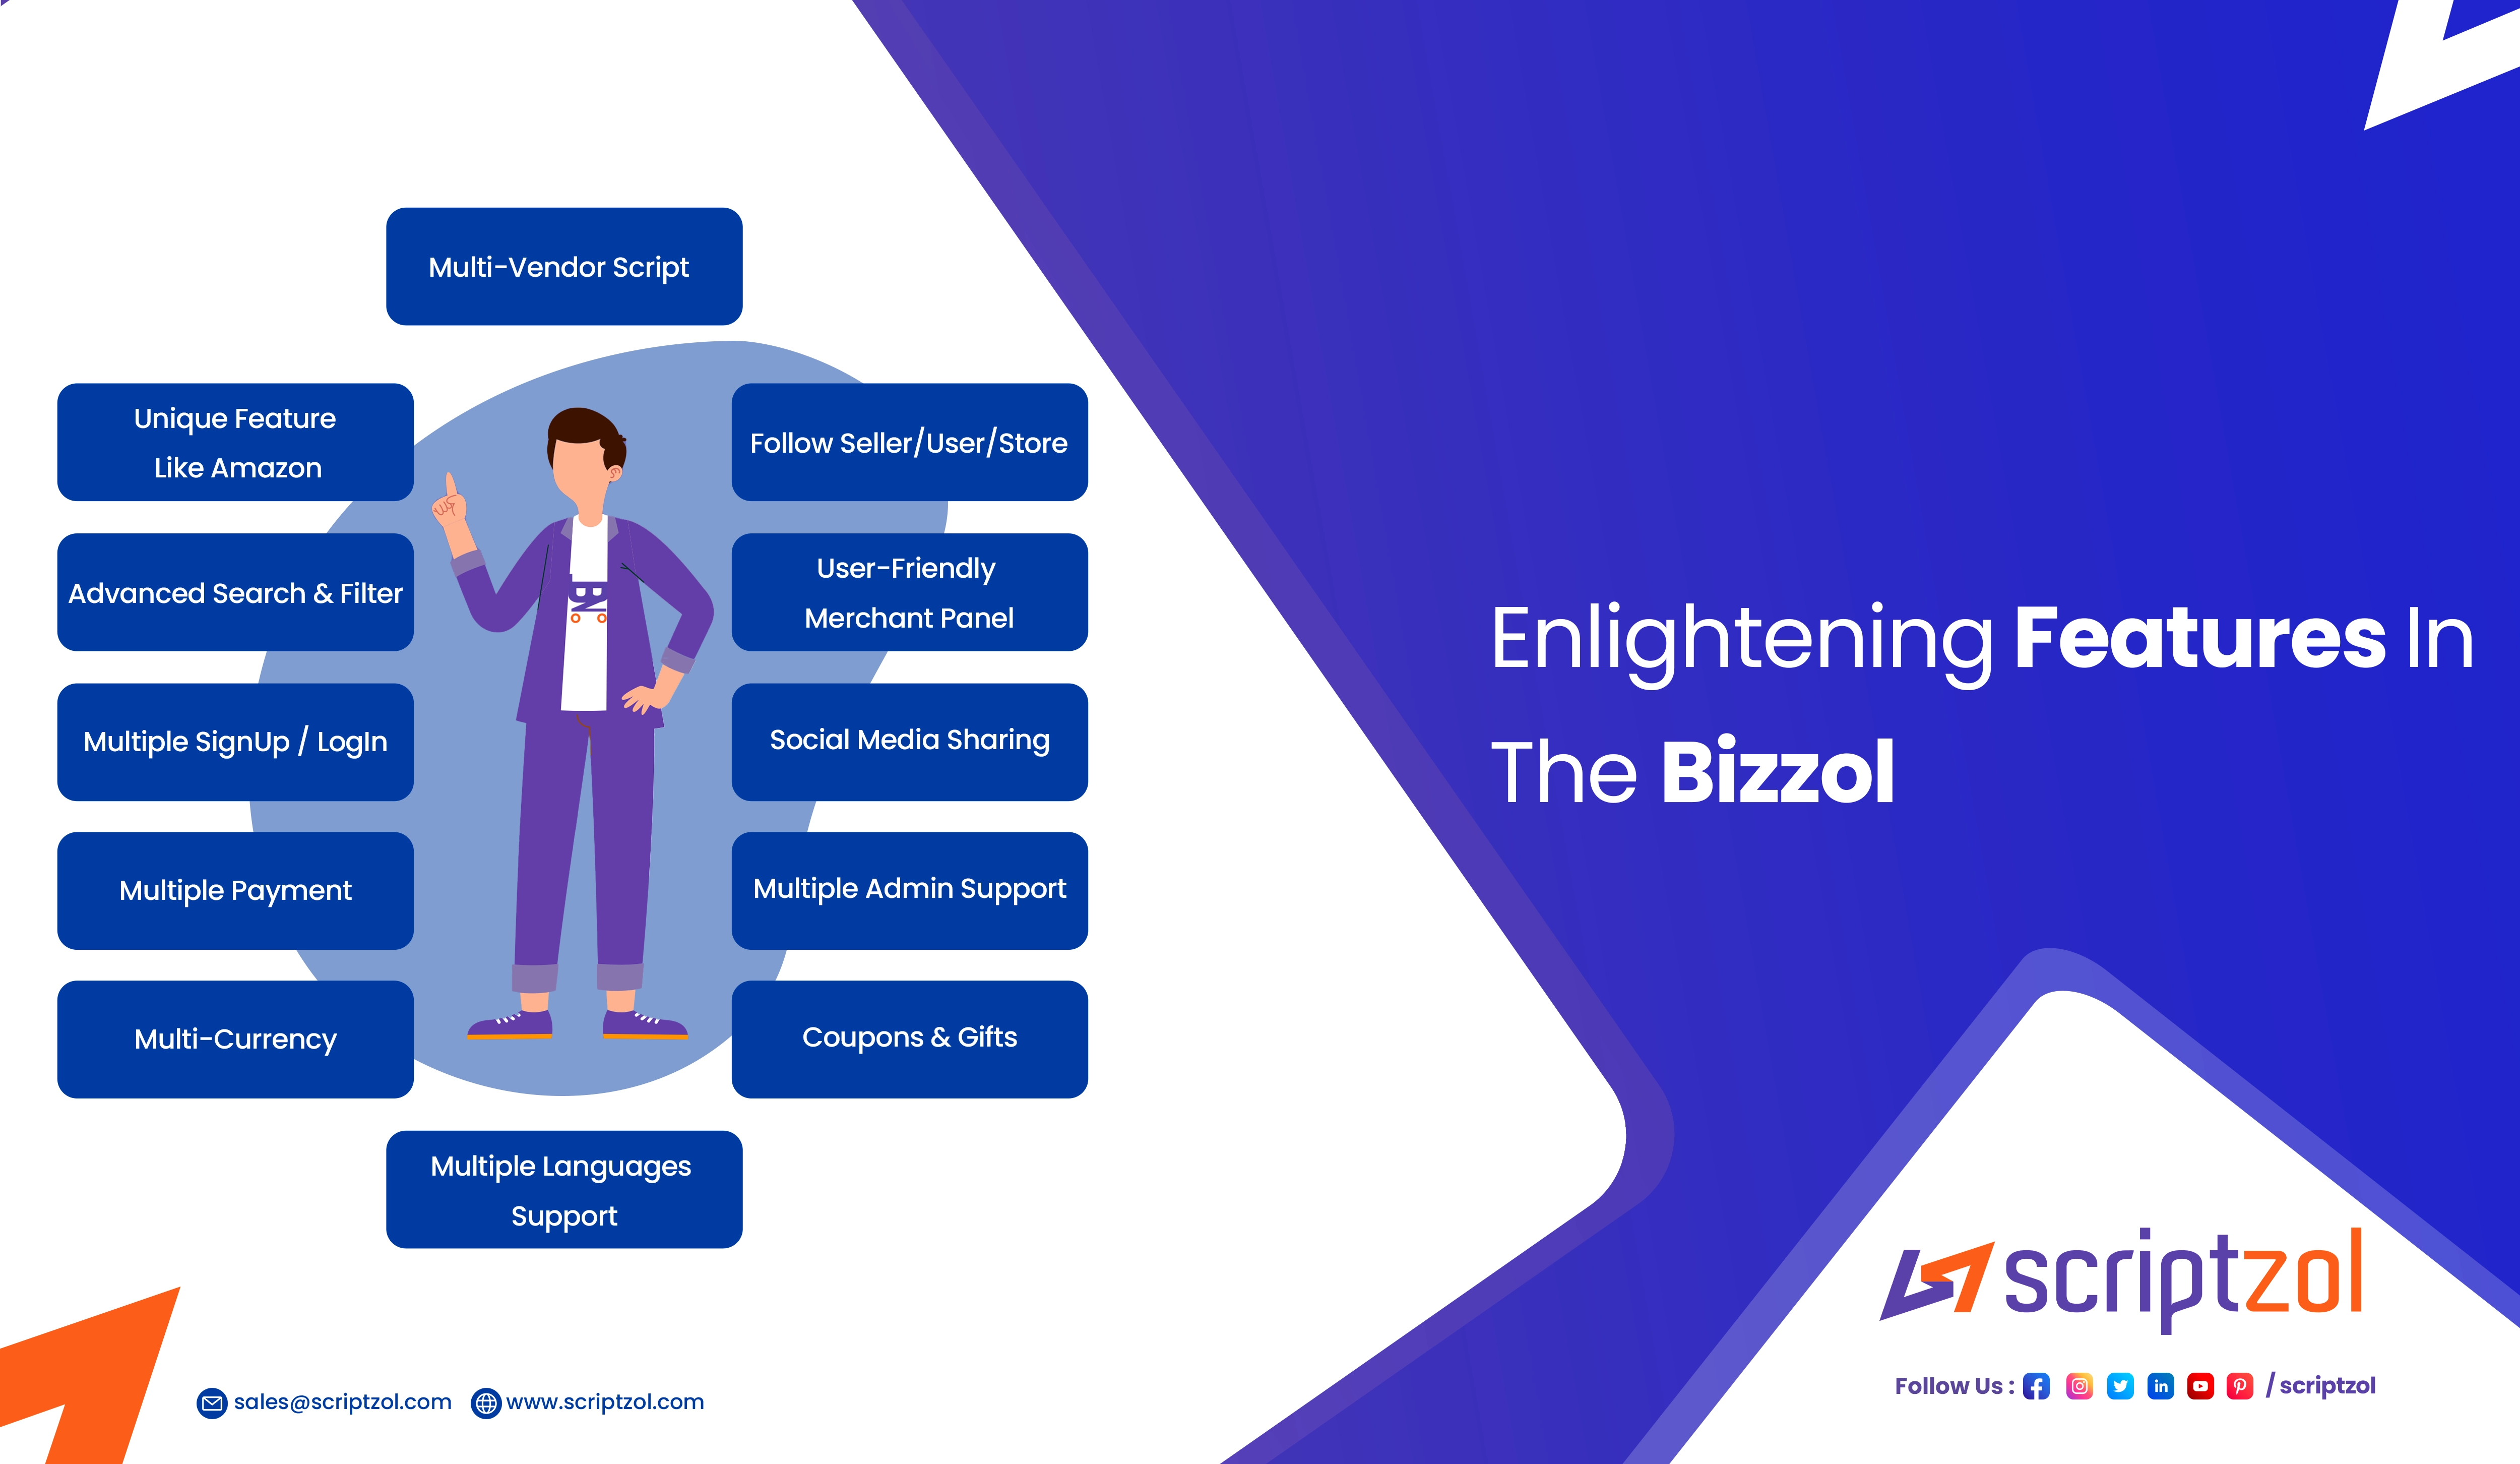 Enlightening Features In The Bizzol